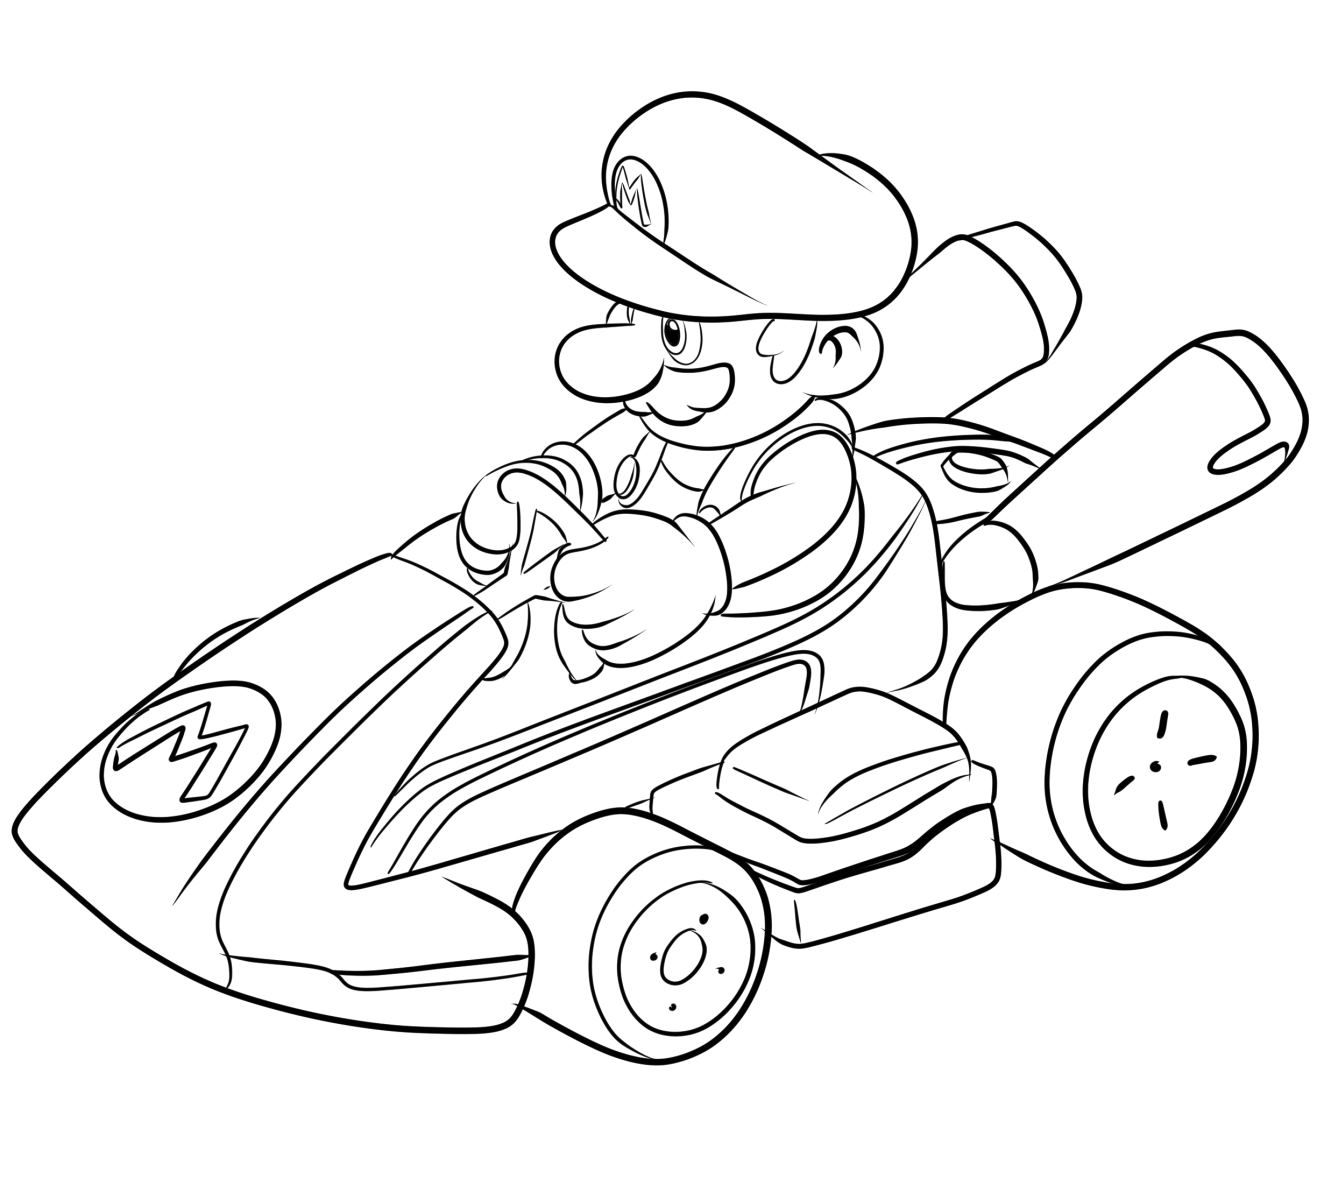 Disegno Mario Kart 05 di Mario Kart da stampare e colorare